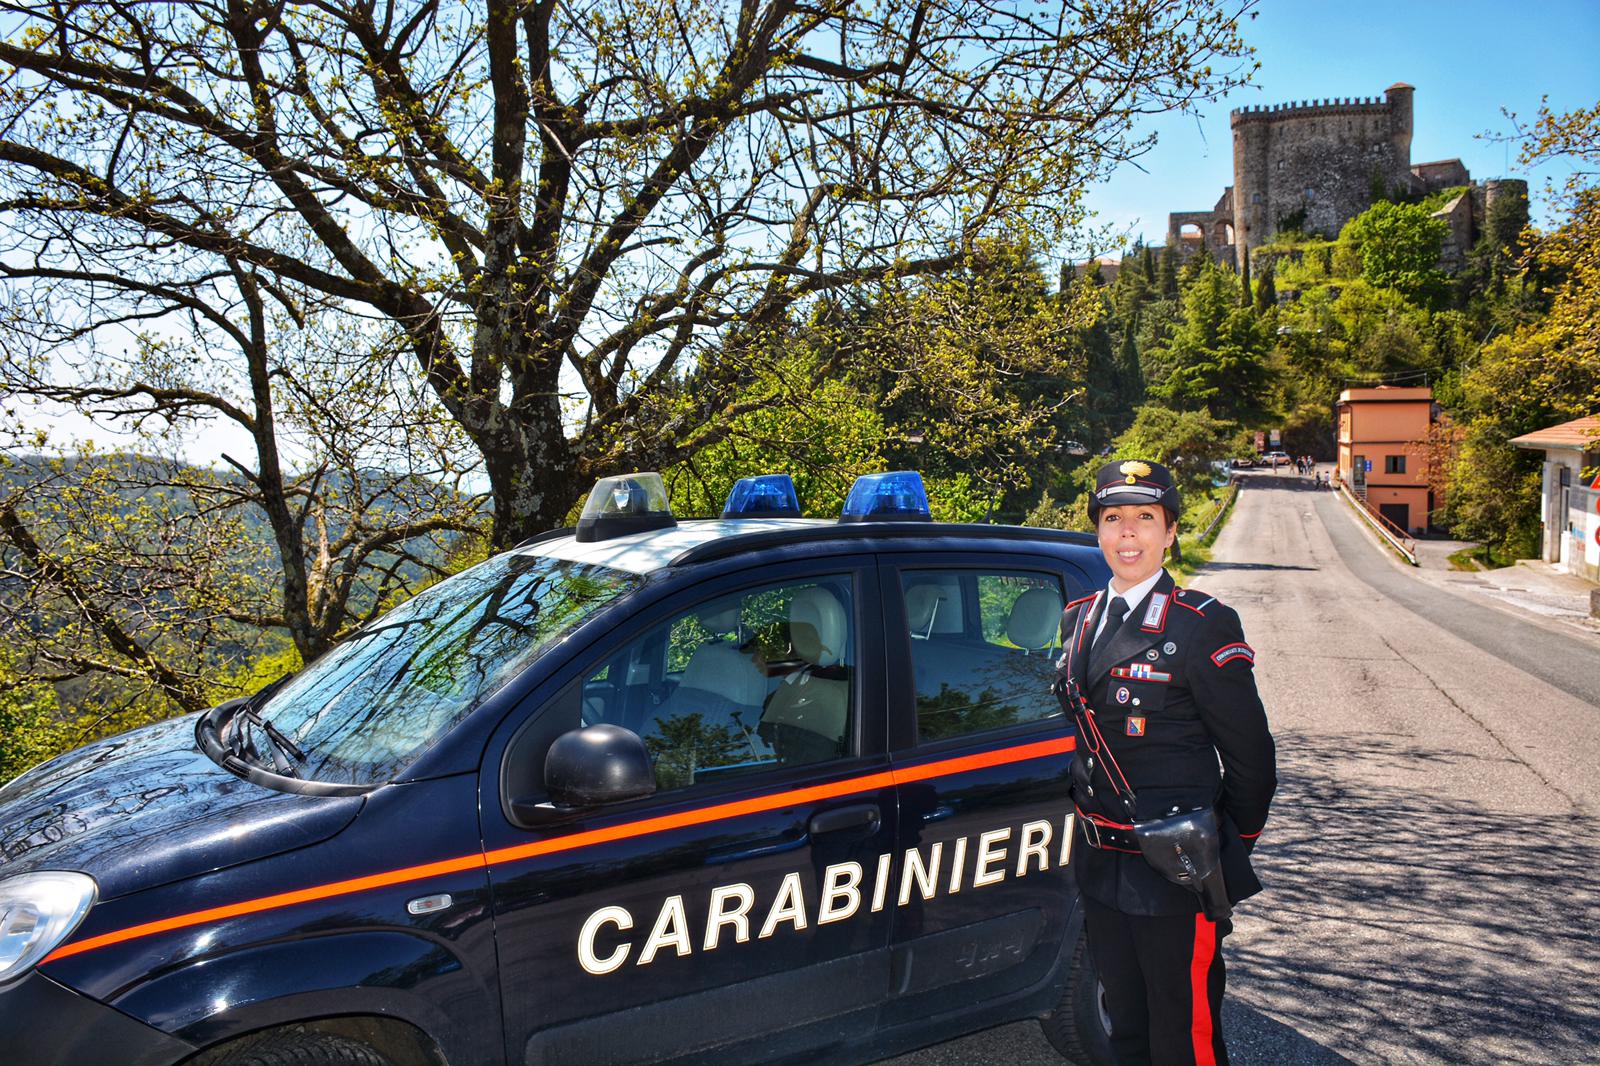 A Fosdinovo la prima stazione Carabinieri della provincia di Massa Carrara guidata da un comandante donna